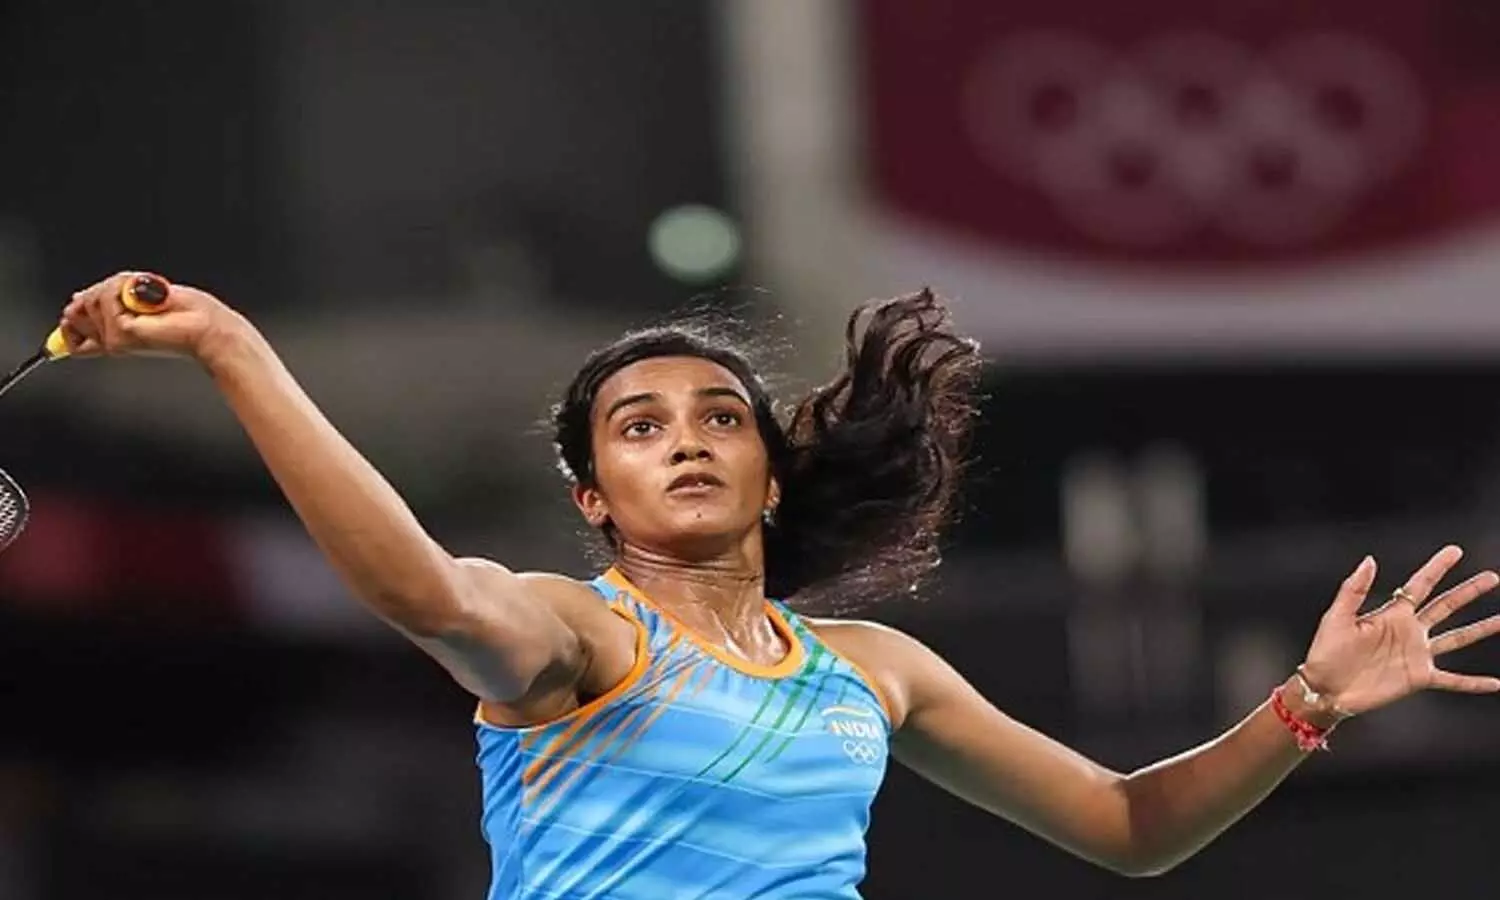 Tokyo Olympics: फाइनल की रेस से बाहर हुईं पीवी सिंधु, लेकिन अभी भी जीत सकती हैं मेडल